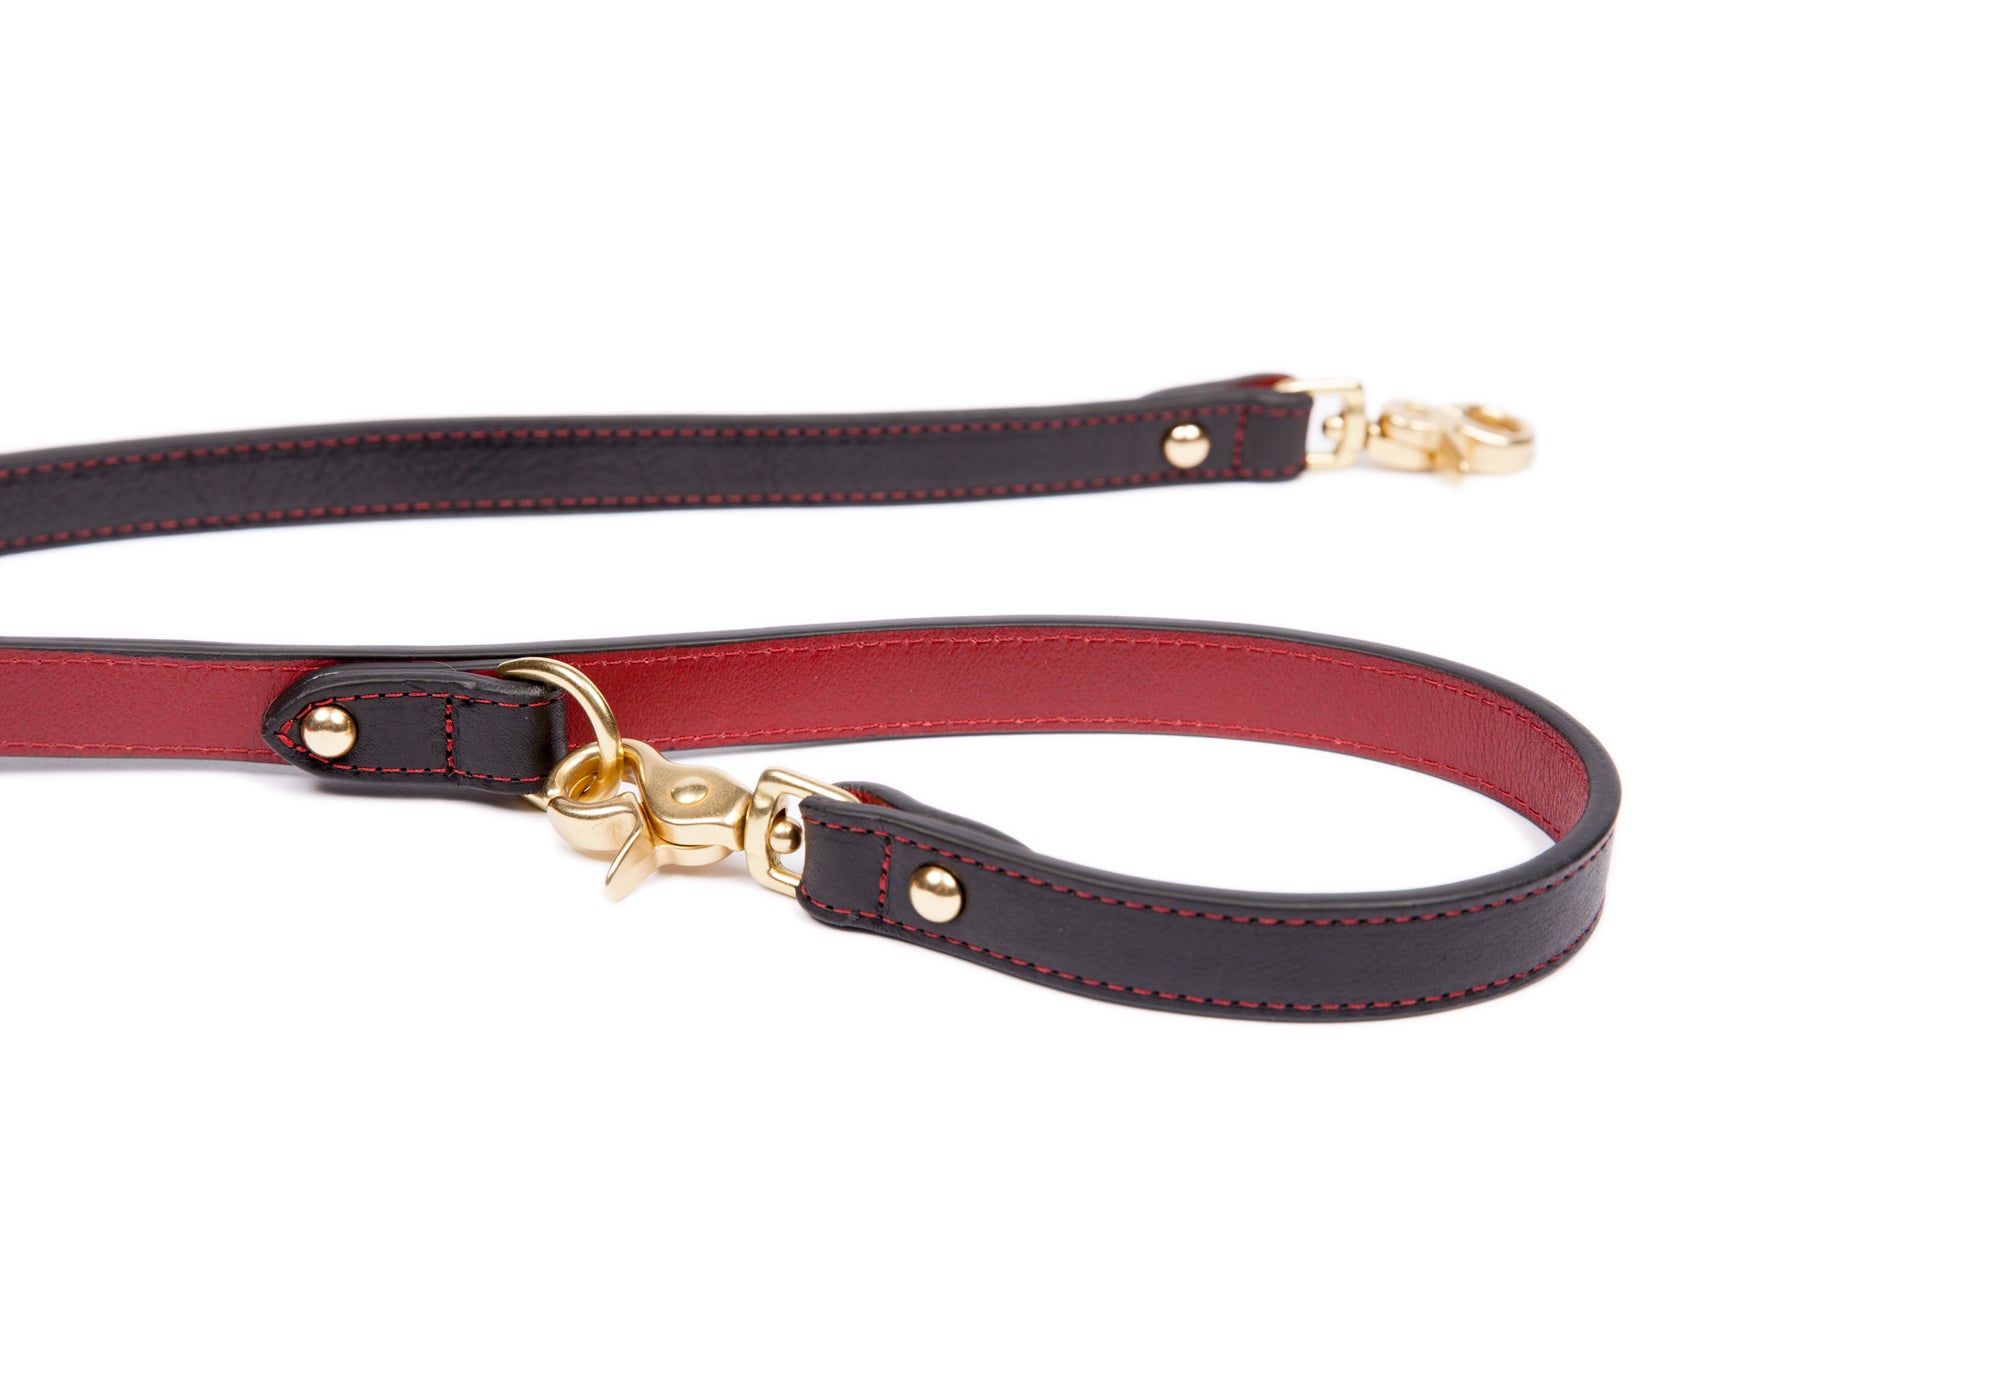 FF Designer Dog Leash & Collar Set for Sale in Fullerton, CA - OfferUp